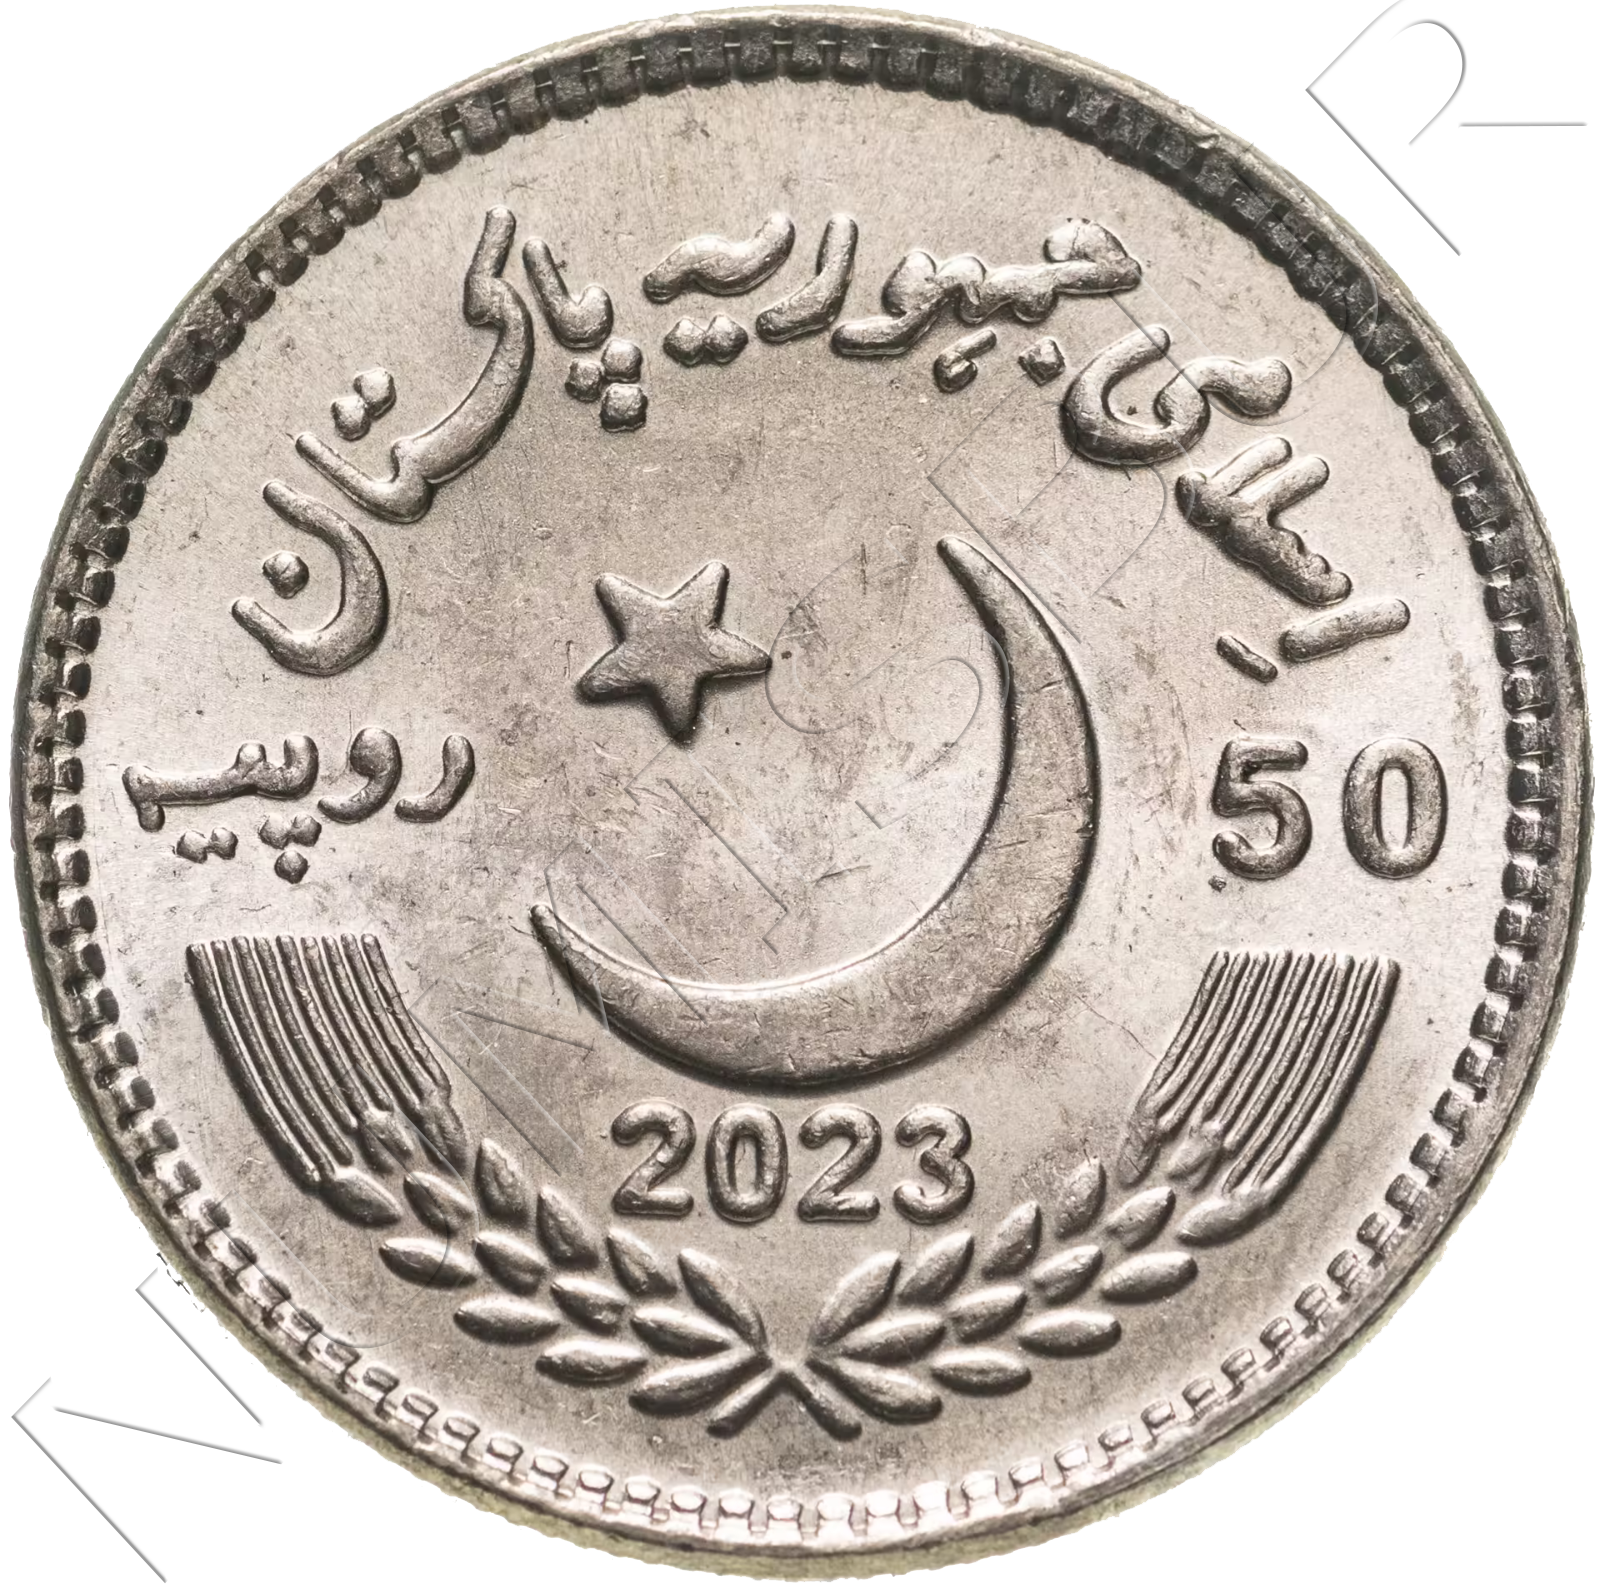 50 rupias PAKISTAN 2023 - Bodas de Oro de la Constitución de 1973